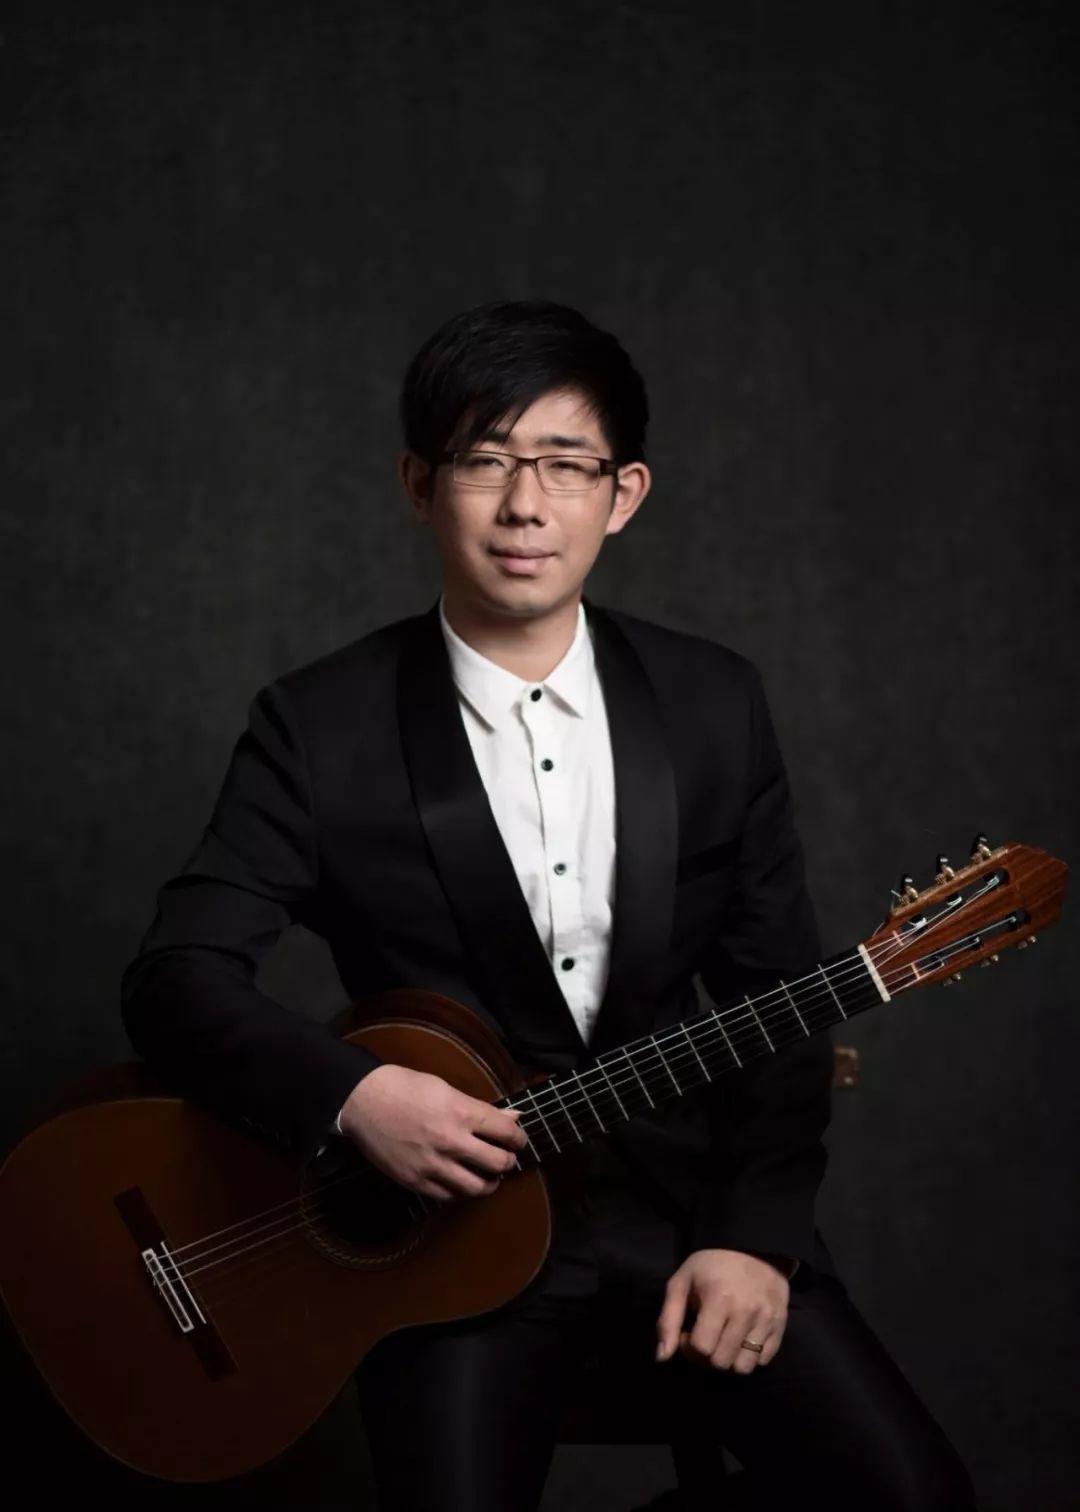 青岛国际吉他艺术节名家 之 王右